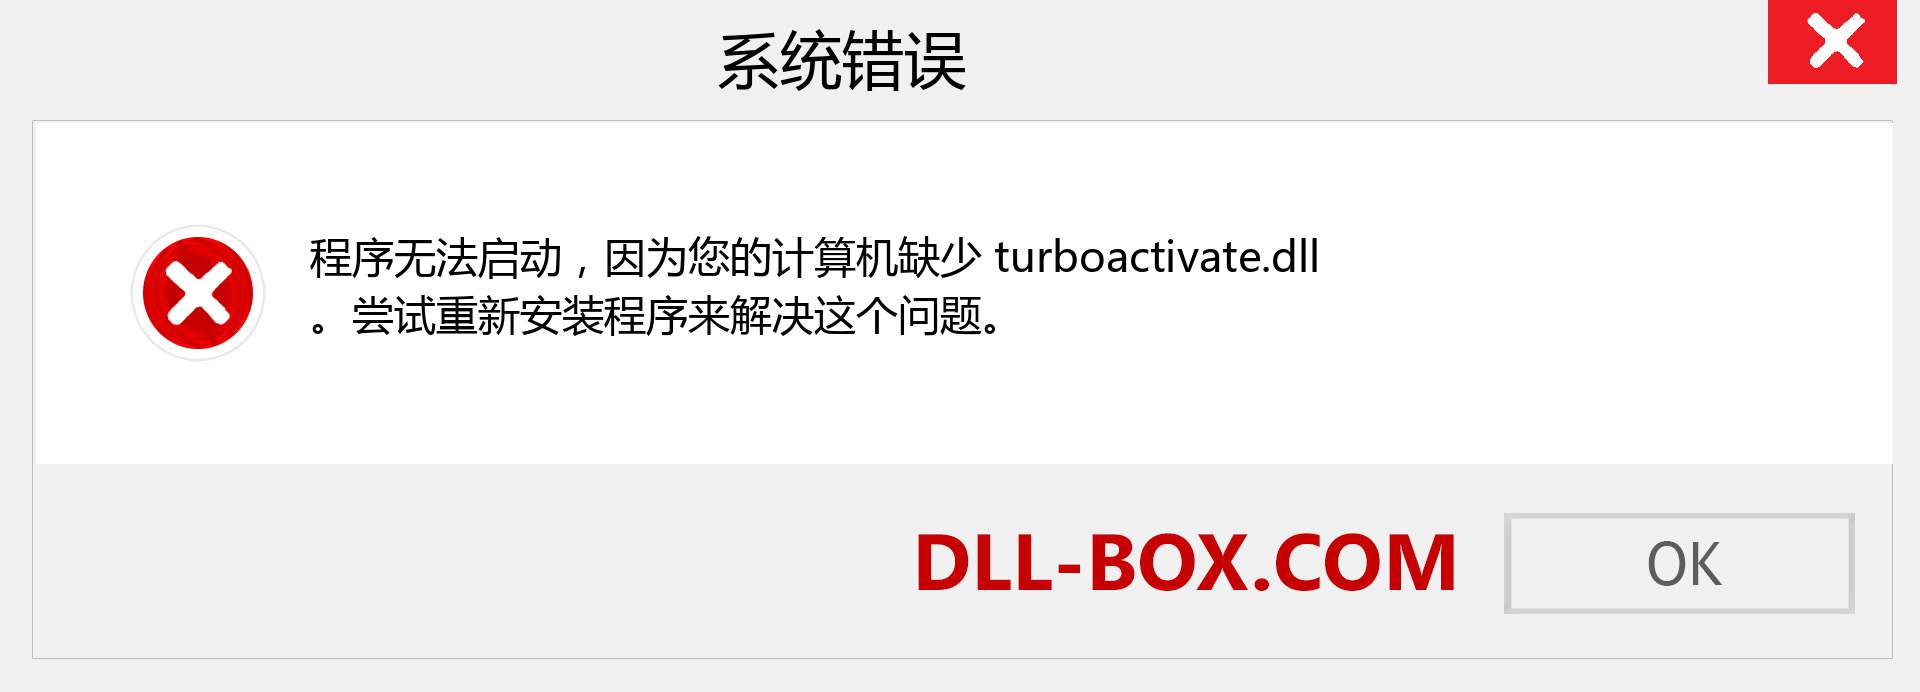 turboactivate.dll 文件丢失？。 适用于 Windows 7、8、10 的下载 - 修复 Windows、照片、图像上的 turboactivate dll 丢失错误